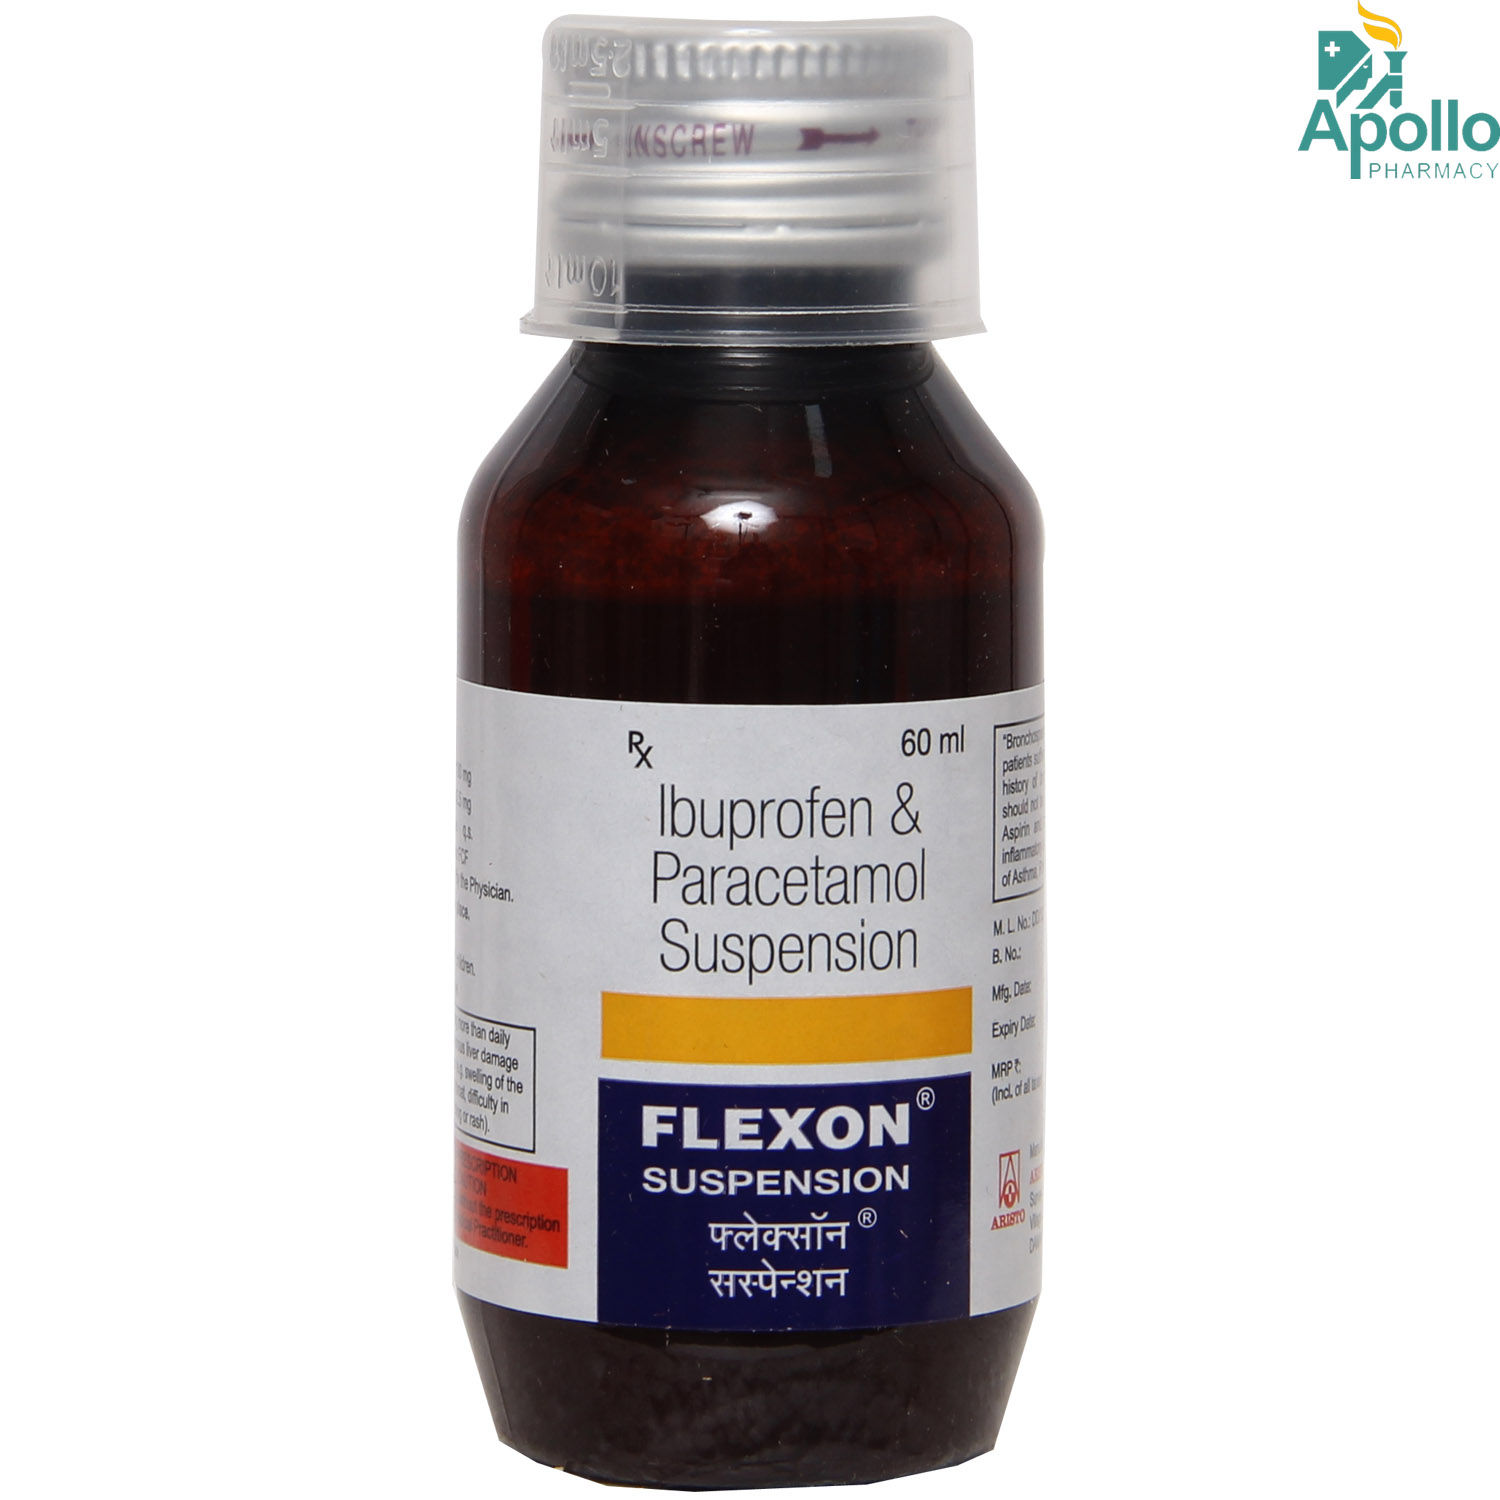 Flexon Suspension 60 ml, Pack of 1 SUSPENSION